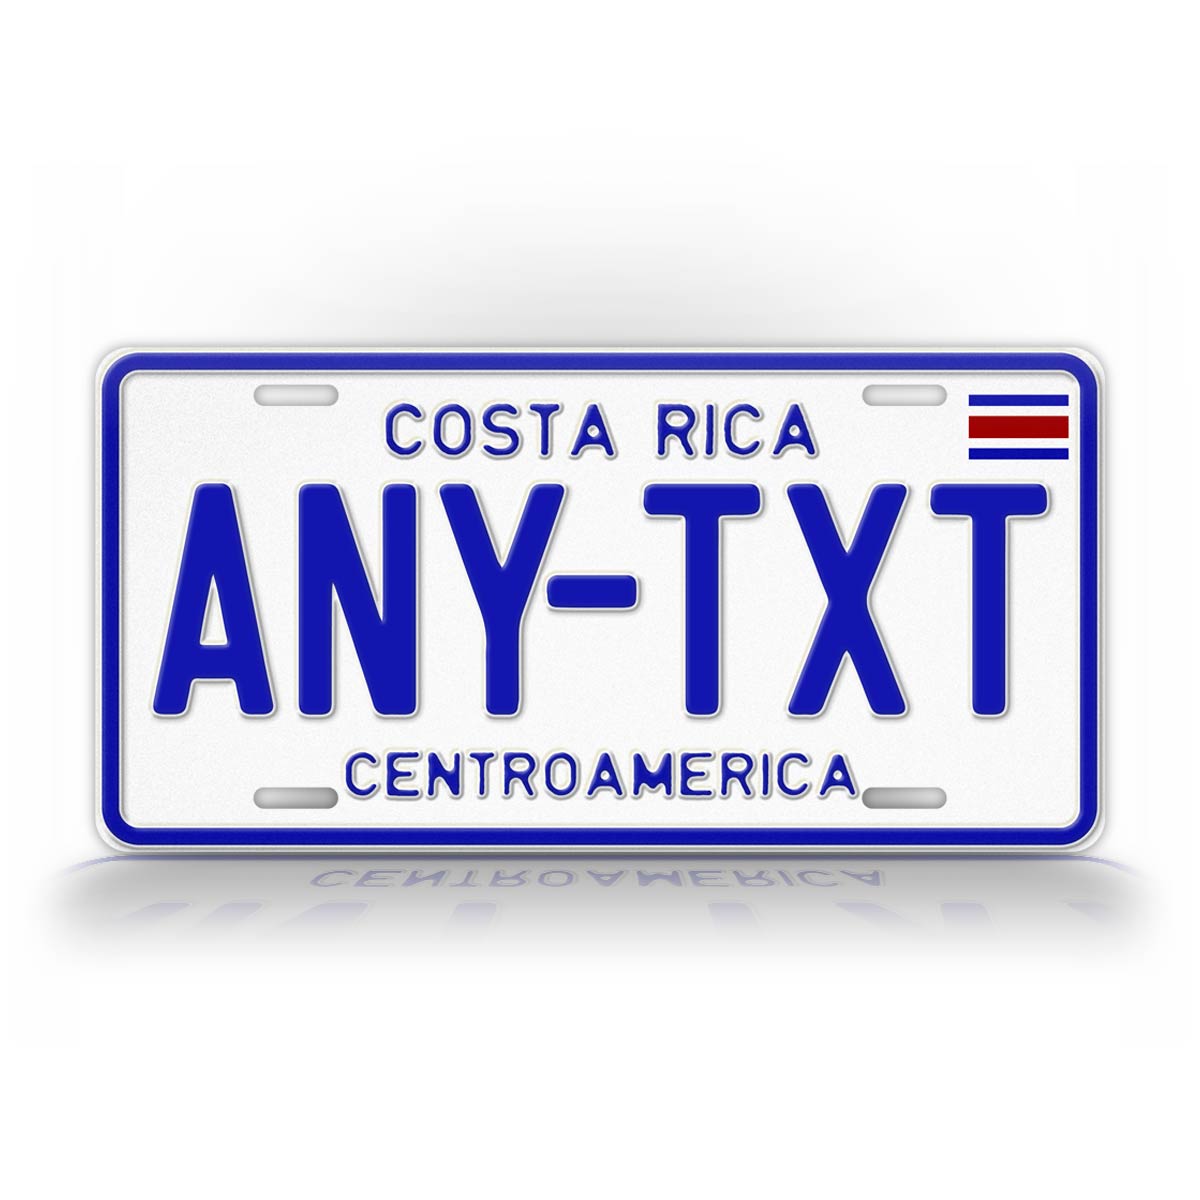 Custom Costa Rica CentroAmerica Personalized License Plate